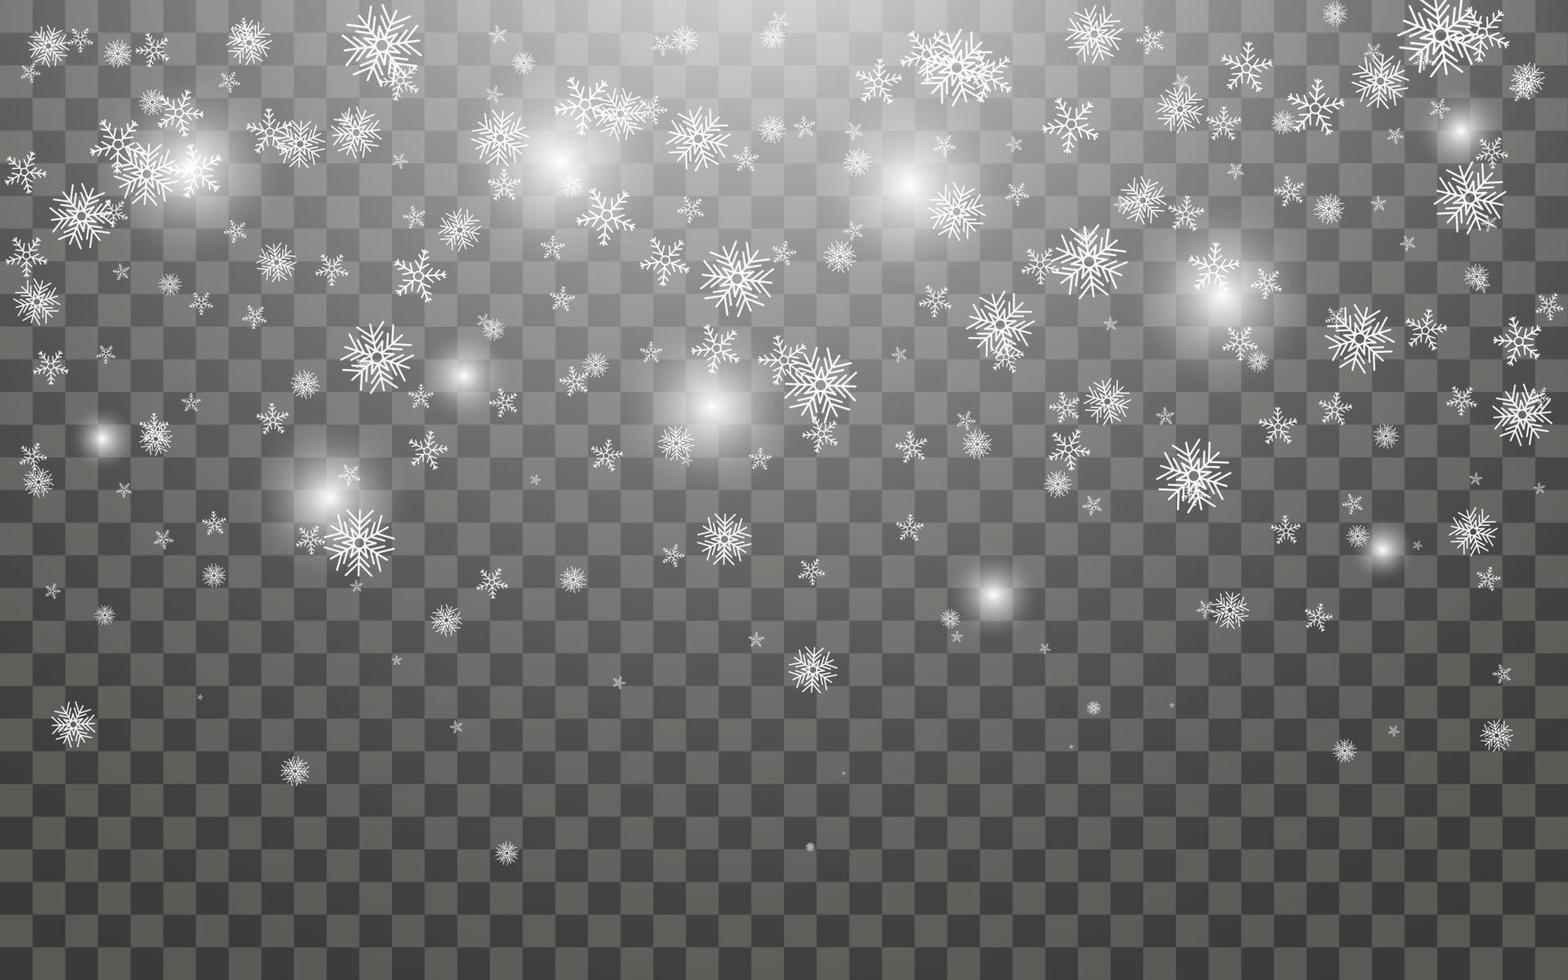 snöfall och faller snöflingor på mörk transparent bakgrund. vit snöflingor och jul snö. vektor illustration